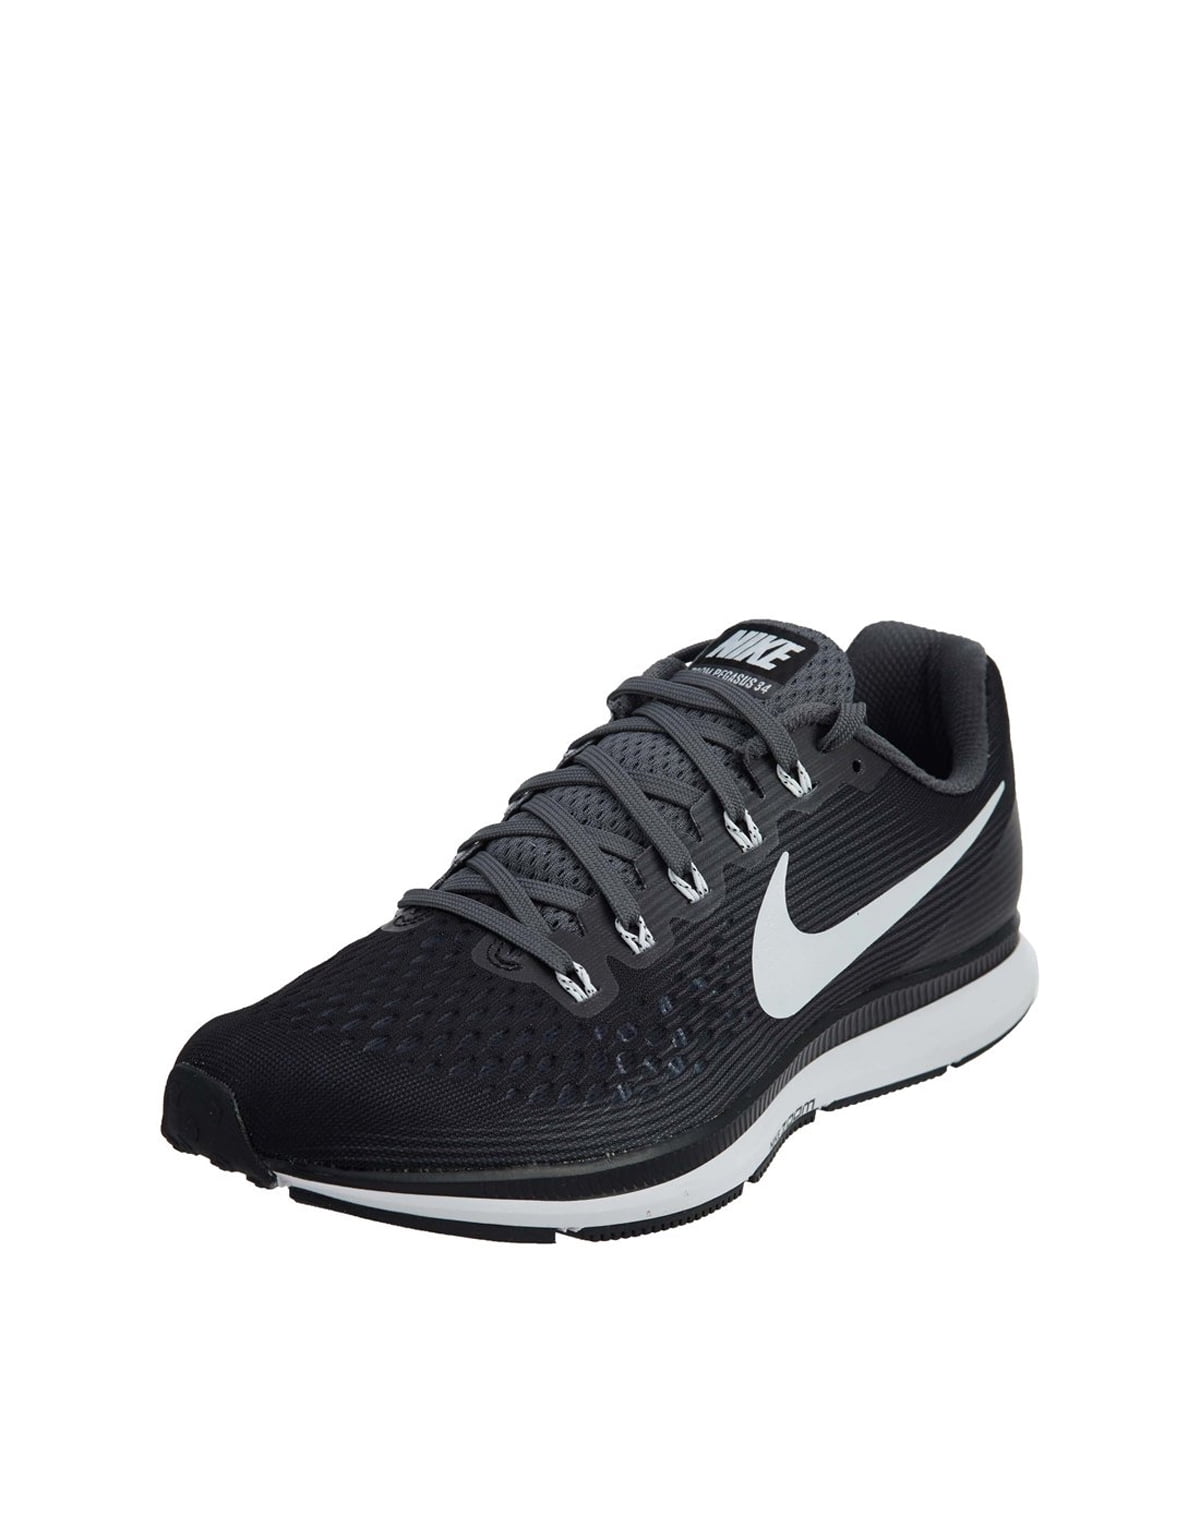 NIKE Zoom Pegasus 34 Mens Running Shoes nk887009 001 (Black/Dark Grey/ Anthracite/White, 8 D(M) US)